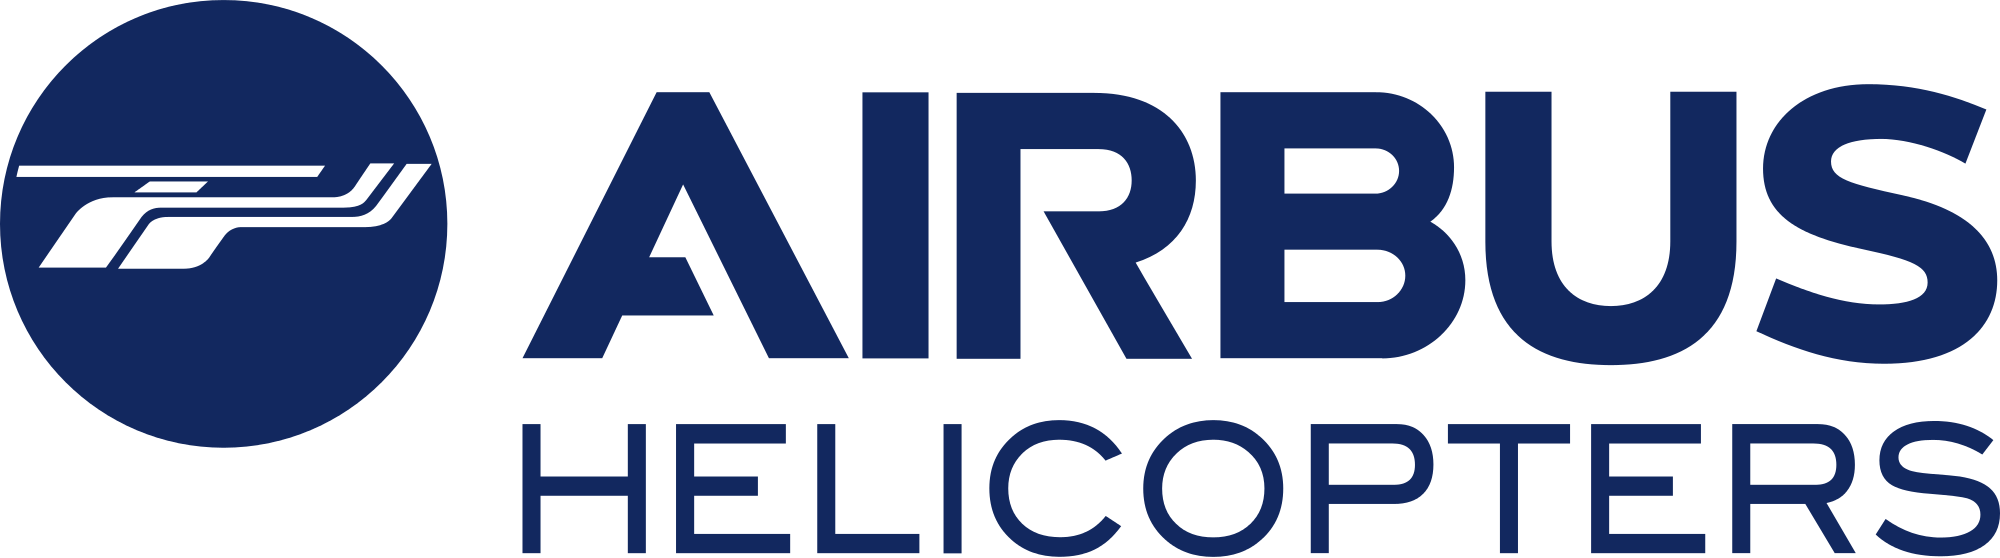 AIRBUS Logo. Format: EPS